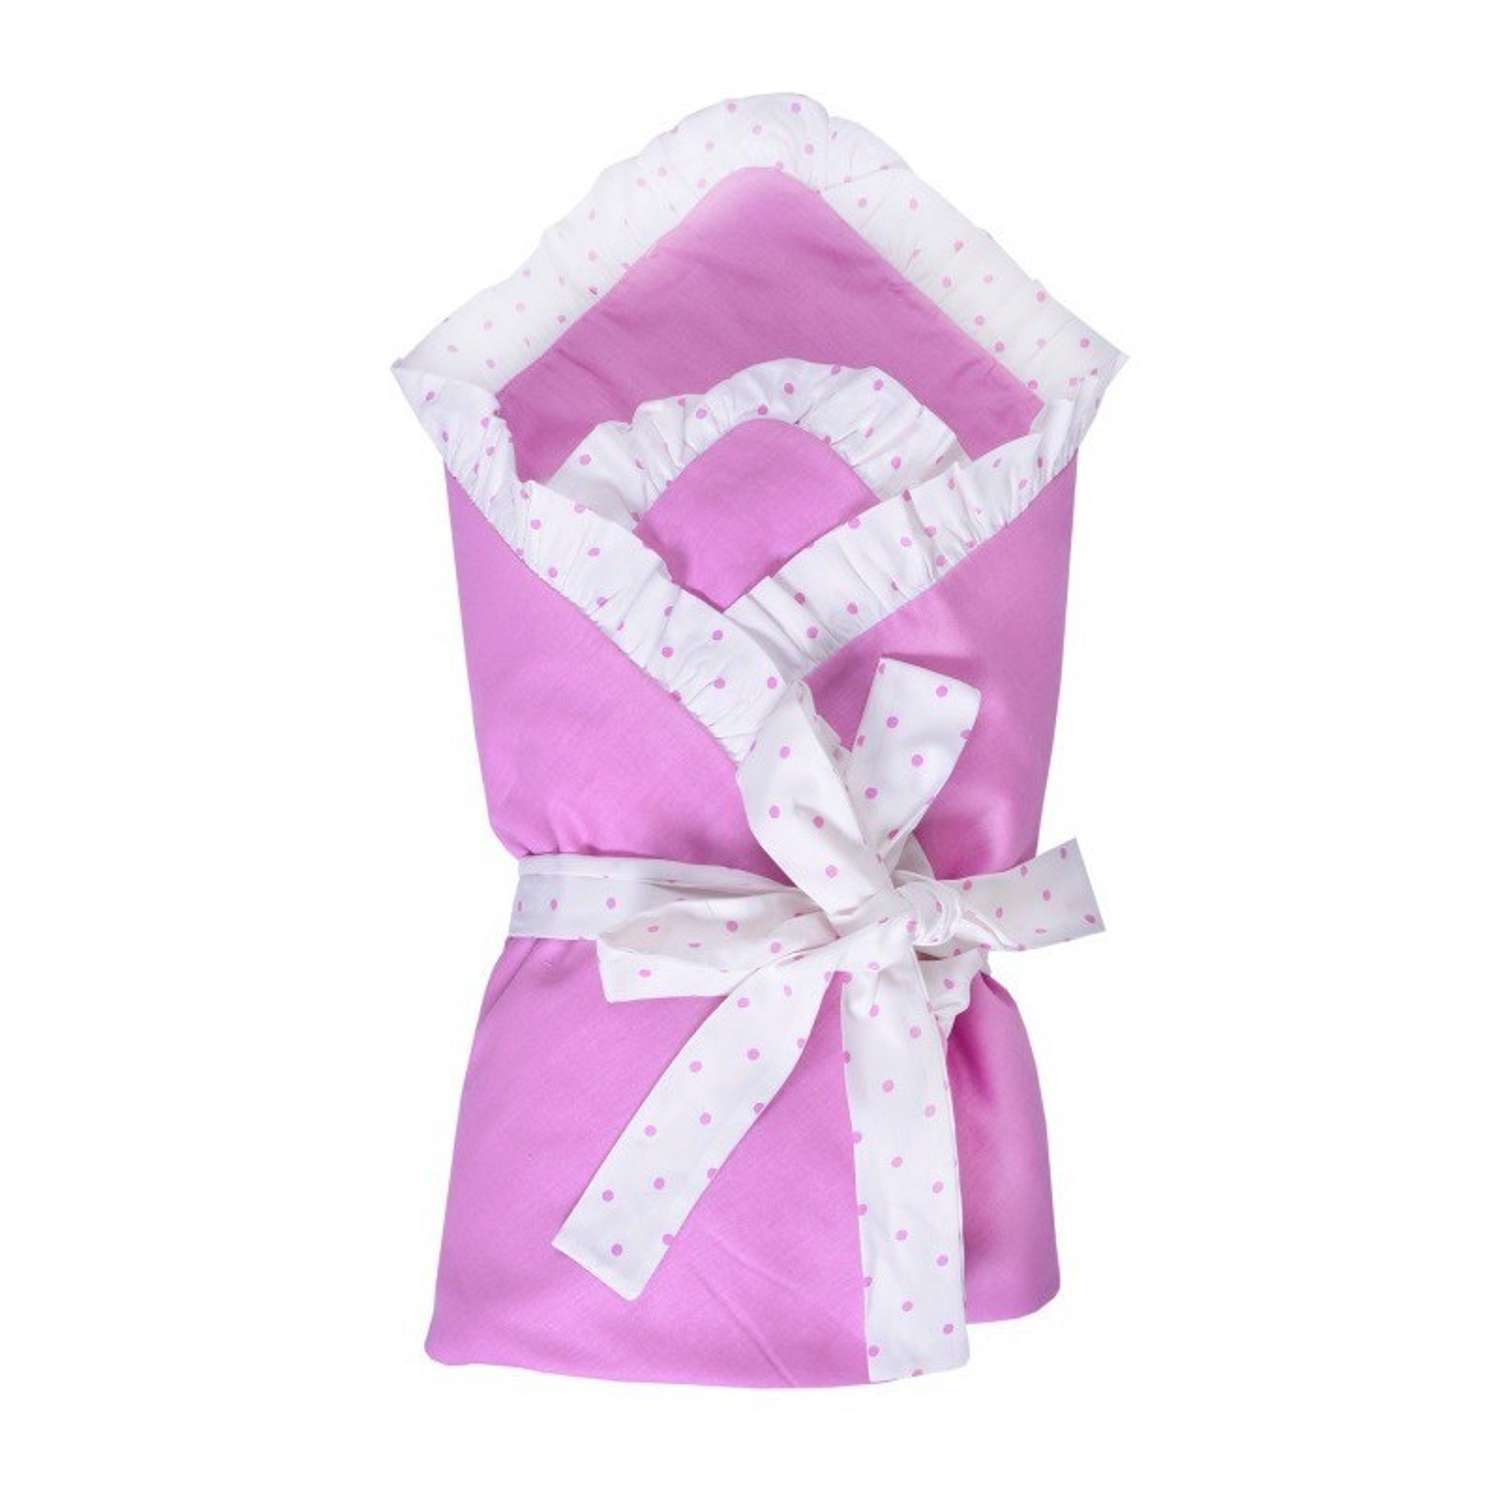 Одеяло Эдельвейс на липучке Розовое - фото 2